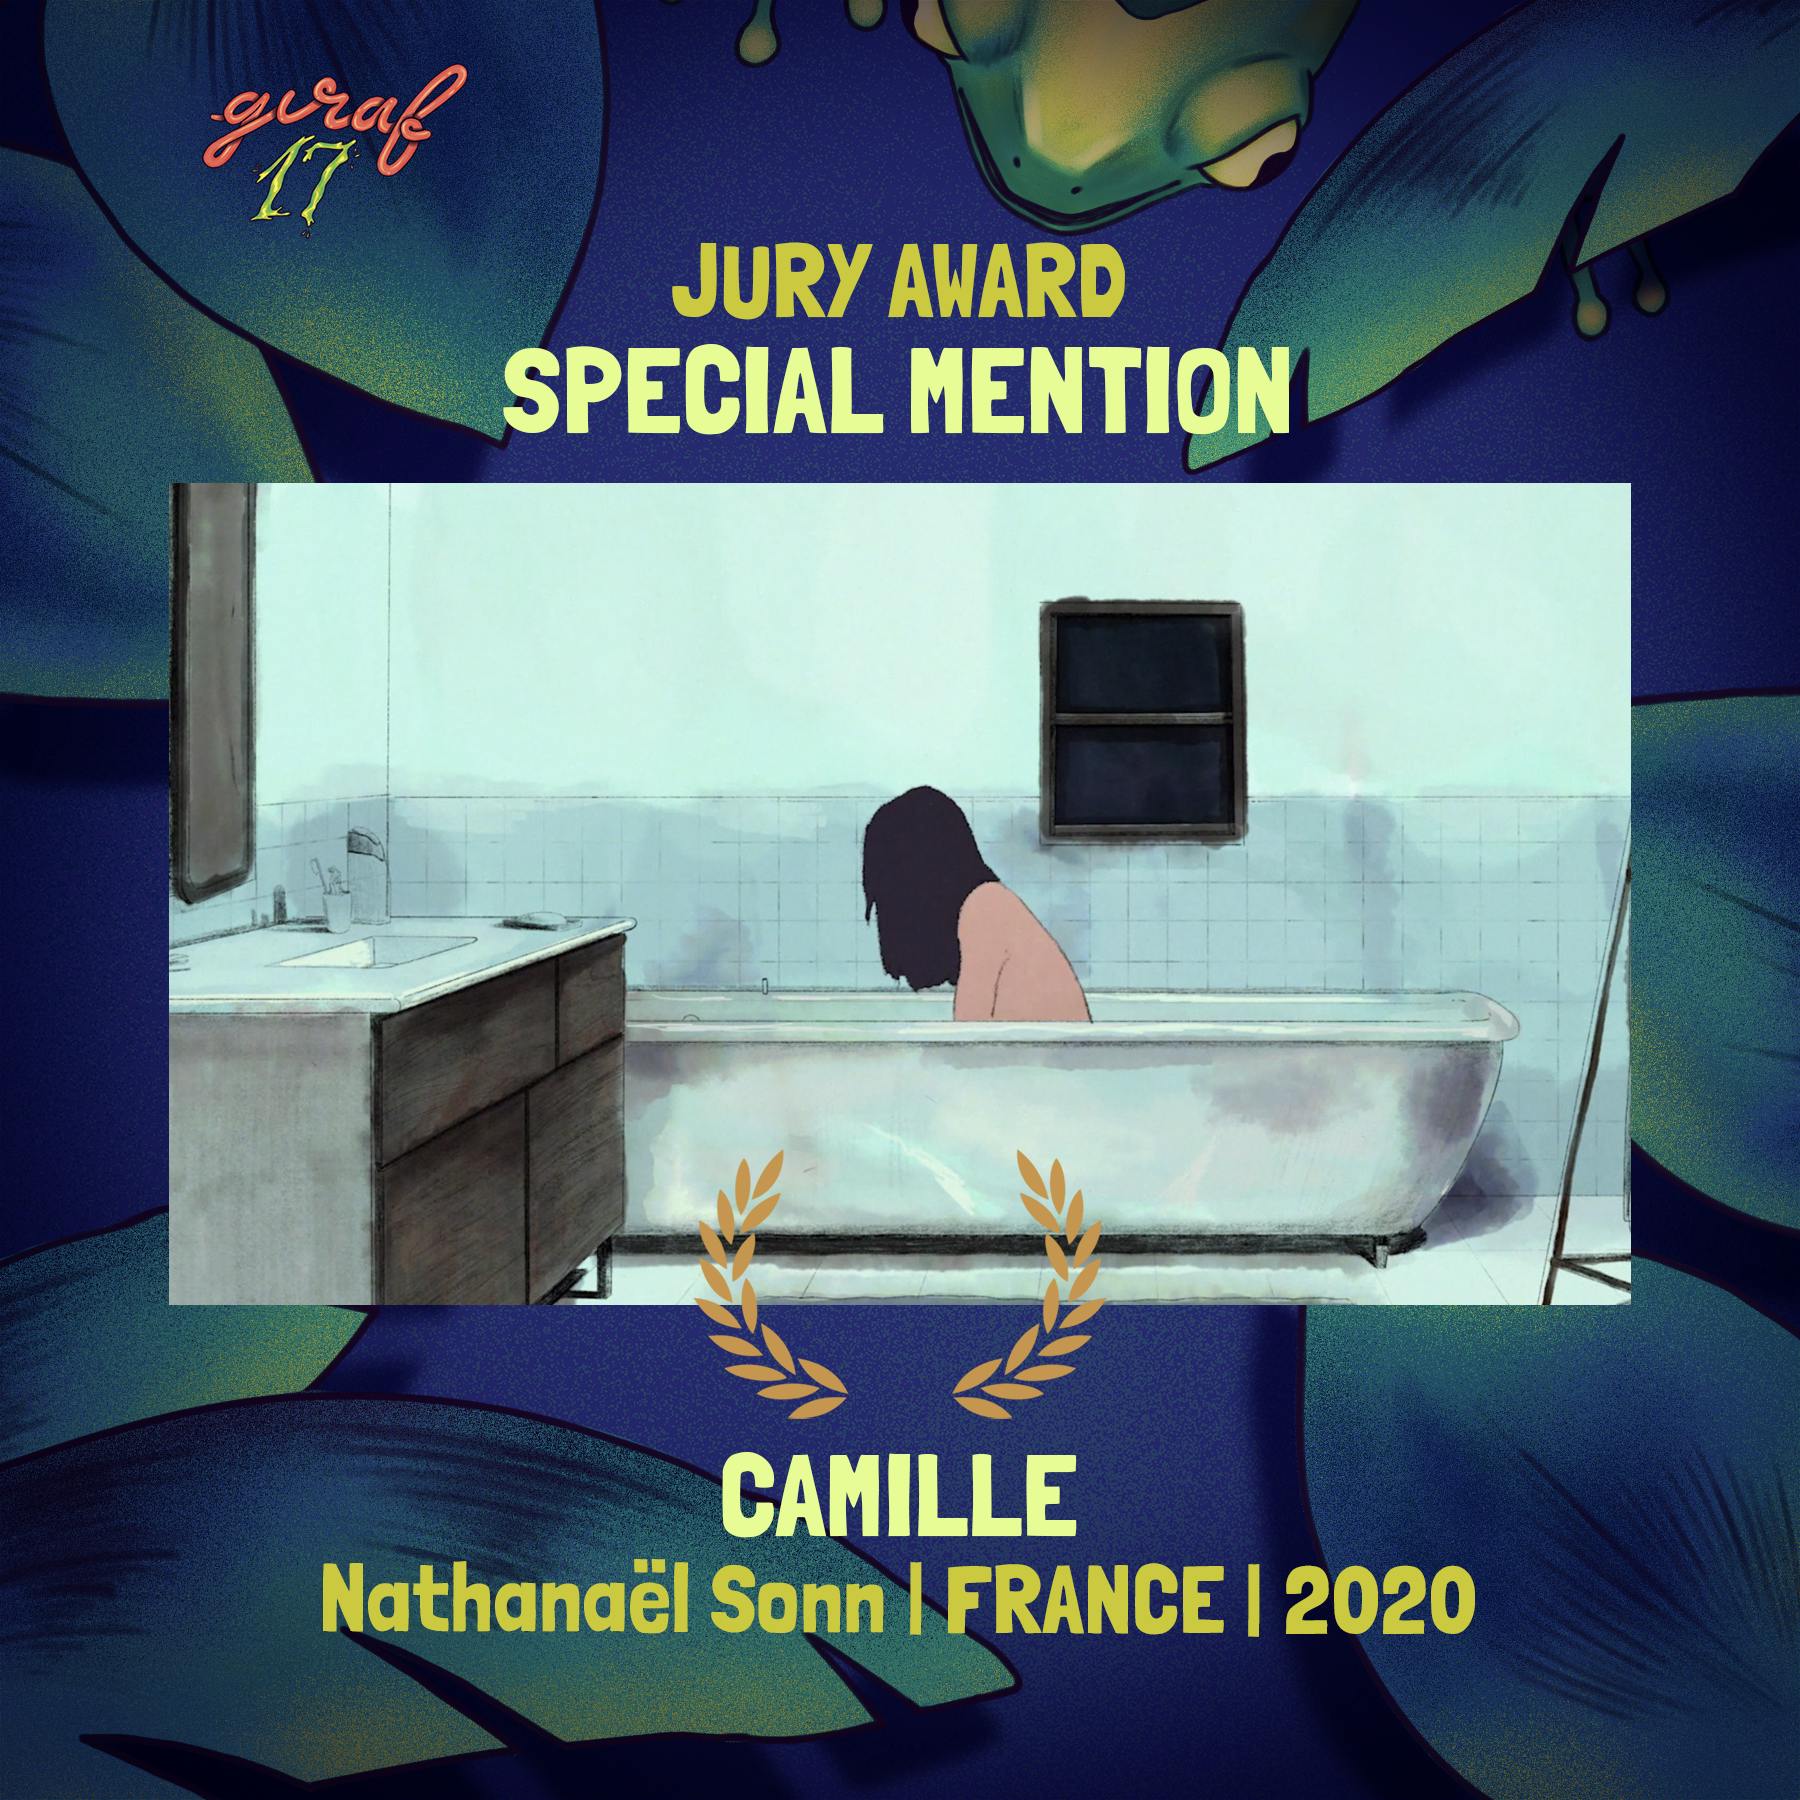 A person sits in a bathtub, their face hidden by their long hair. Surrounding text: GIRAF17 Jury Award; Special Mention; Camille; Nathanaël Sonn; France; 2020